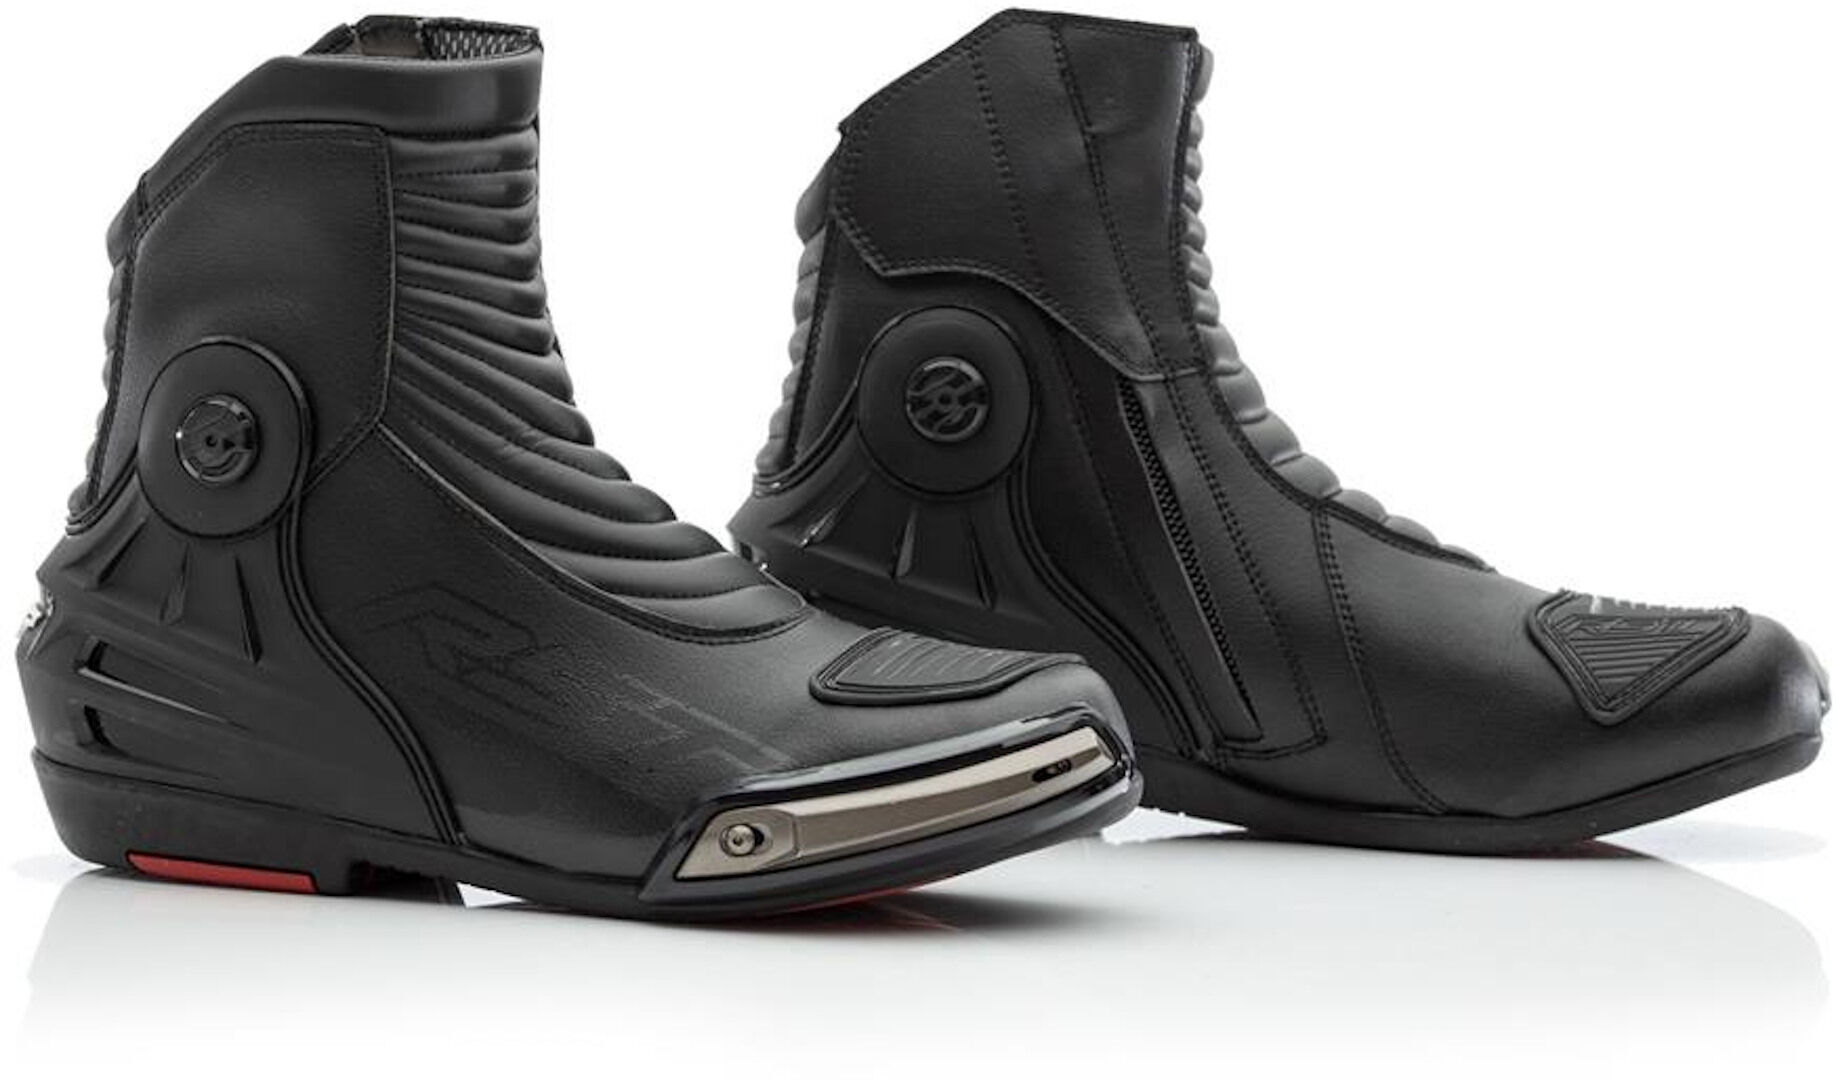 RST Tractech Evo 3 WP Zapatos de motocicleta - Negro (45)